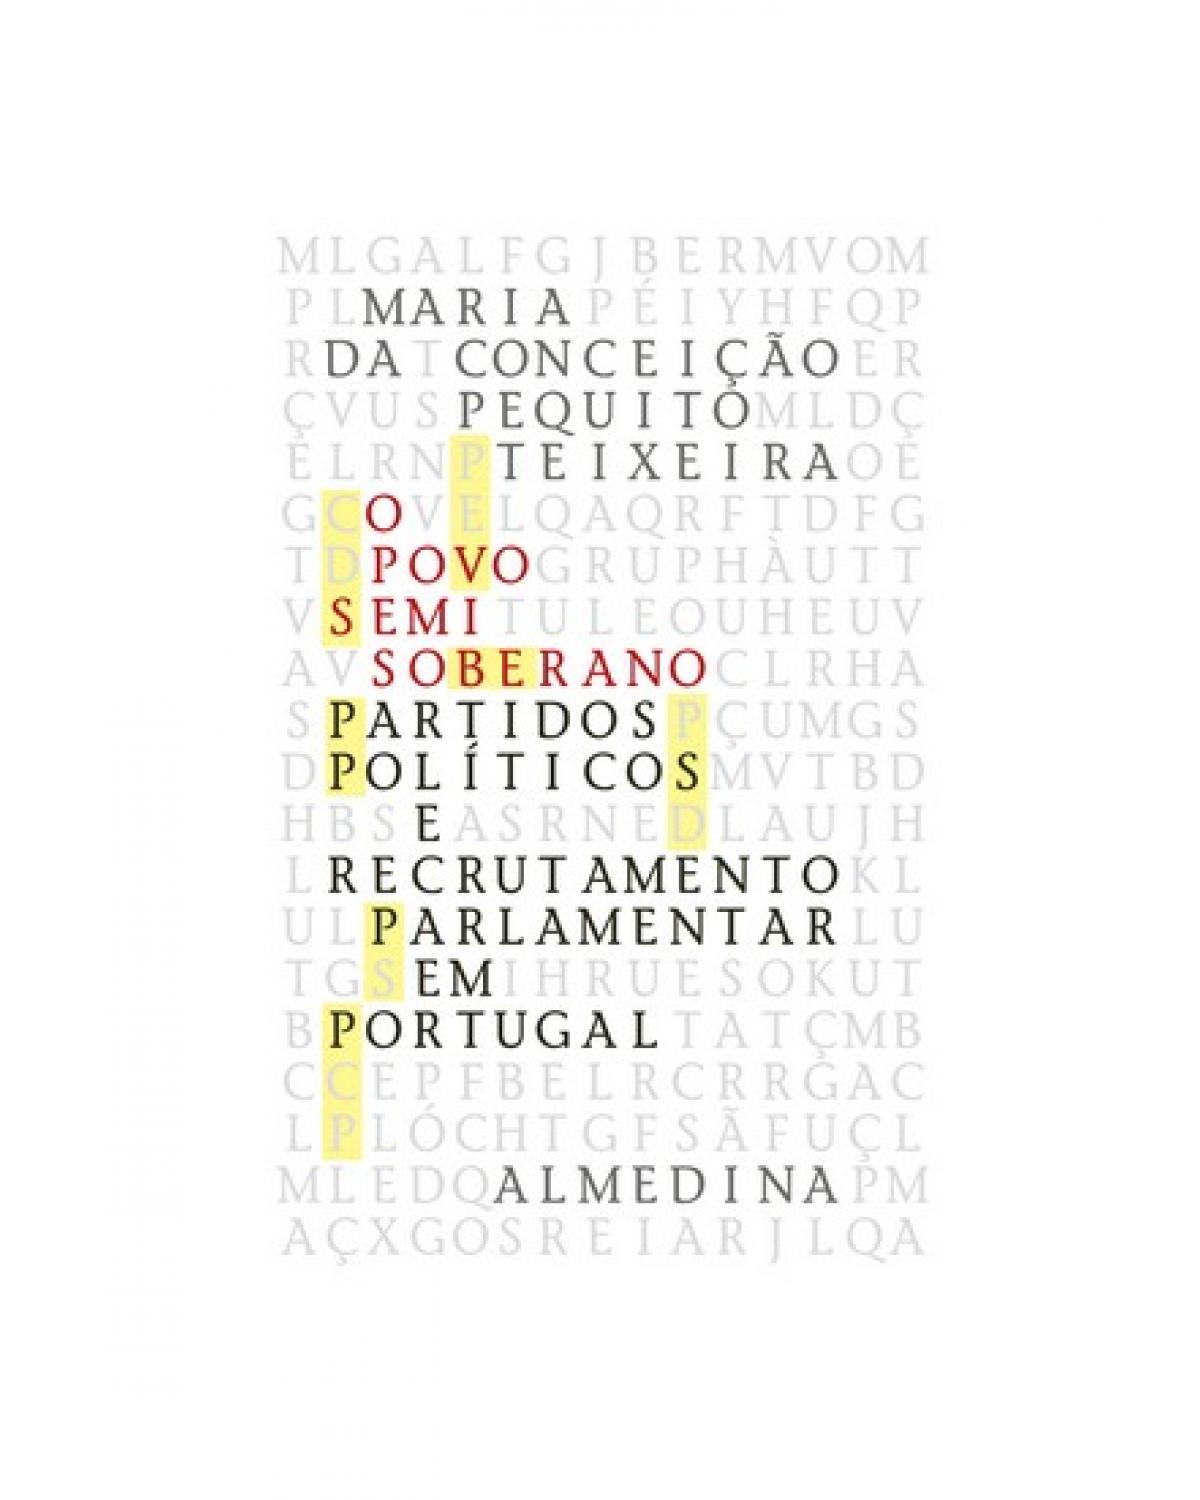 O povo semi-soberano - partidos políticos e recrutamento parlamentar em Portugal (1990-2003) - 1ª Edição | 2009